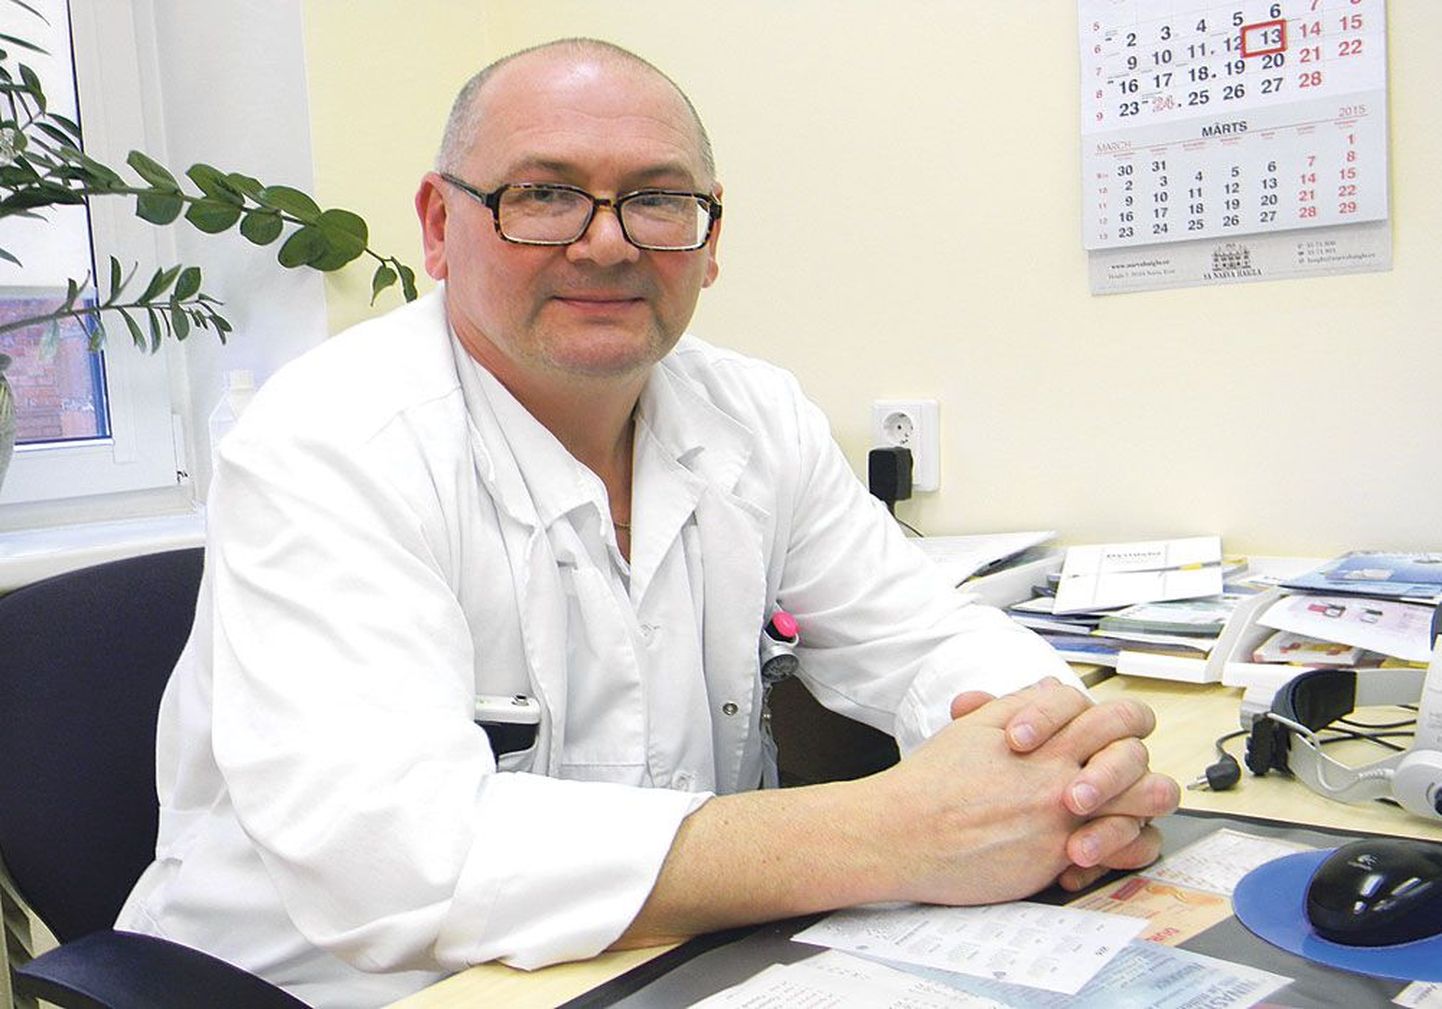 Доверенное лицо Союза врачей в Нарве Дмитрий Коннов, рассказывая о проблемах местной больницы, сам себя с иронией называет «доктор-камикадзе».